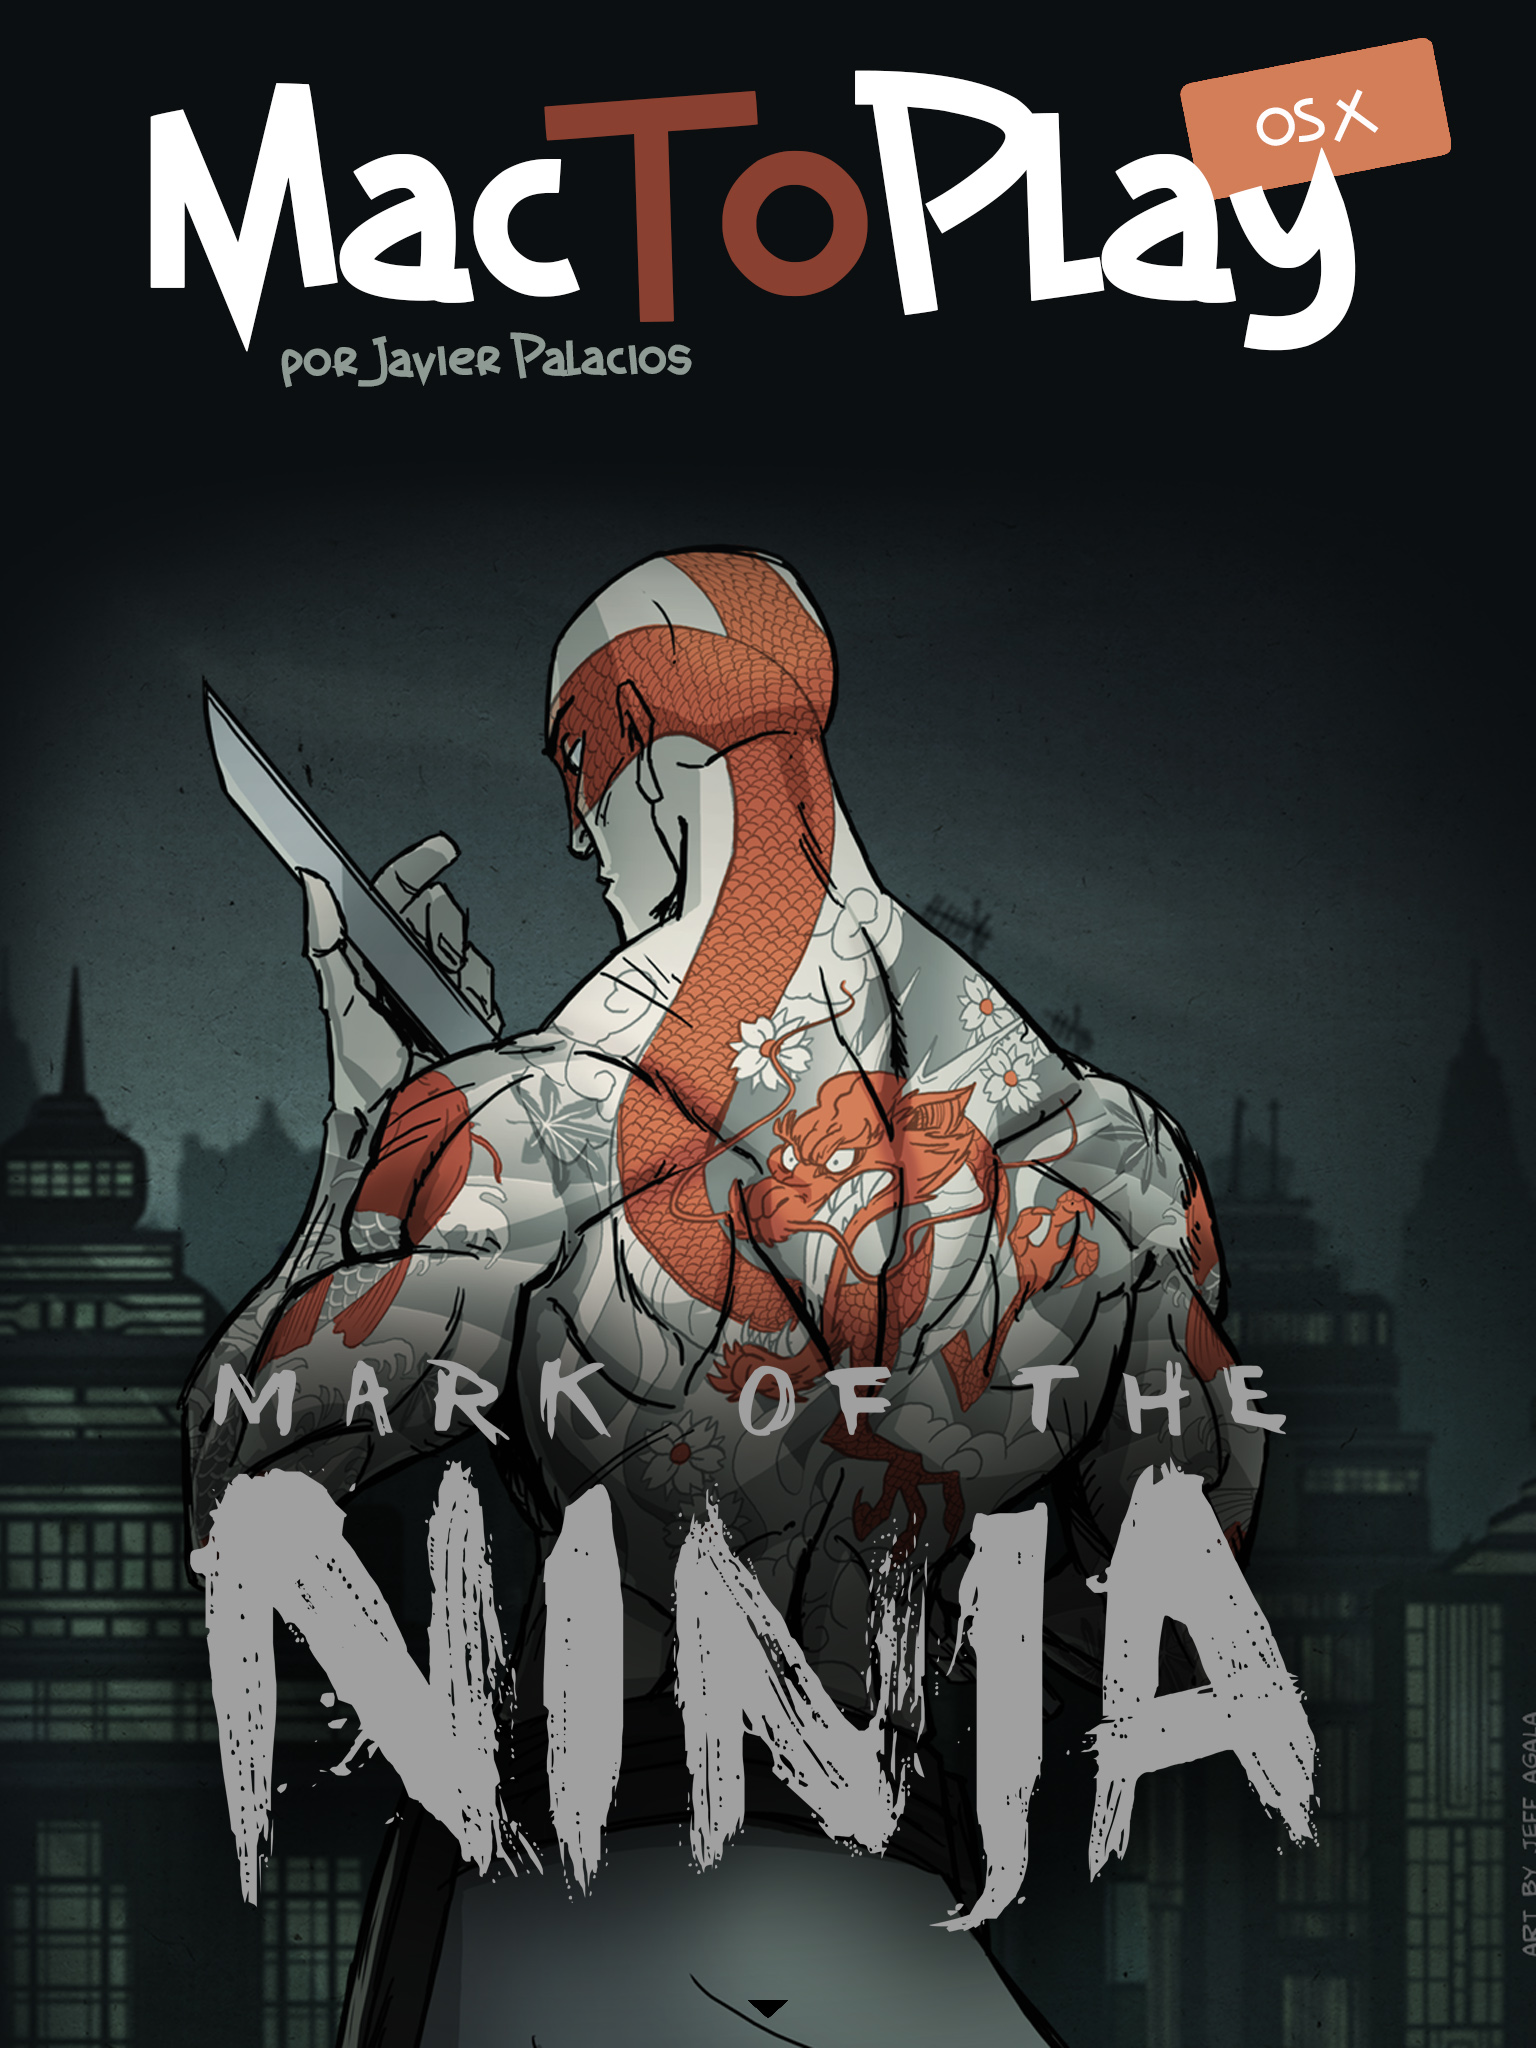 mactoplay os x: análisis sobre Mark of the Ninja. Continúa abajo el artículo